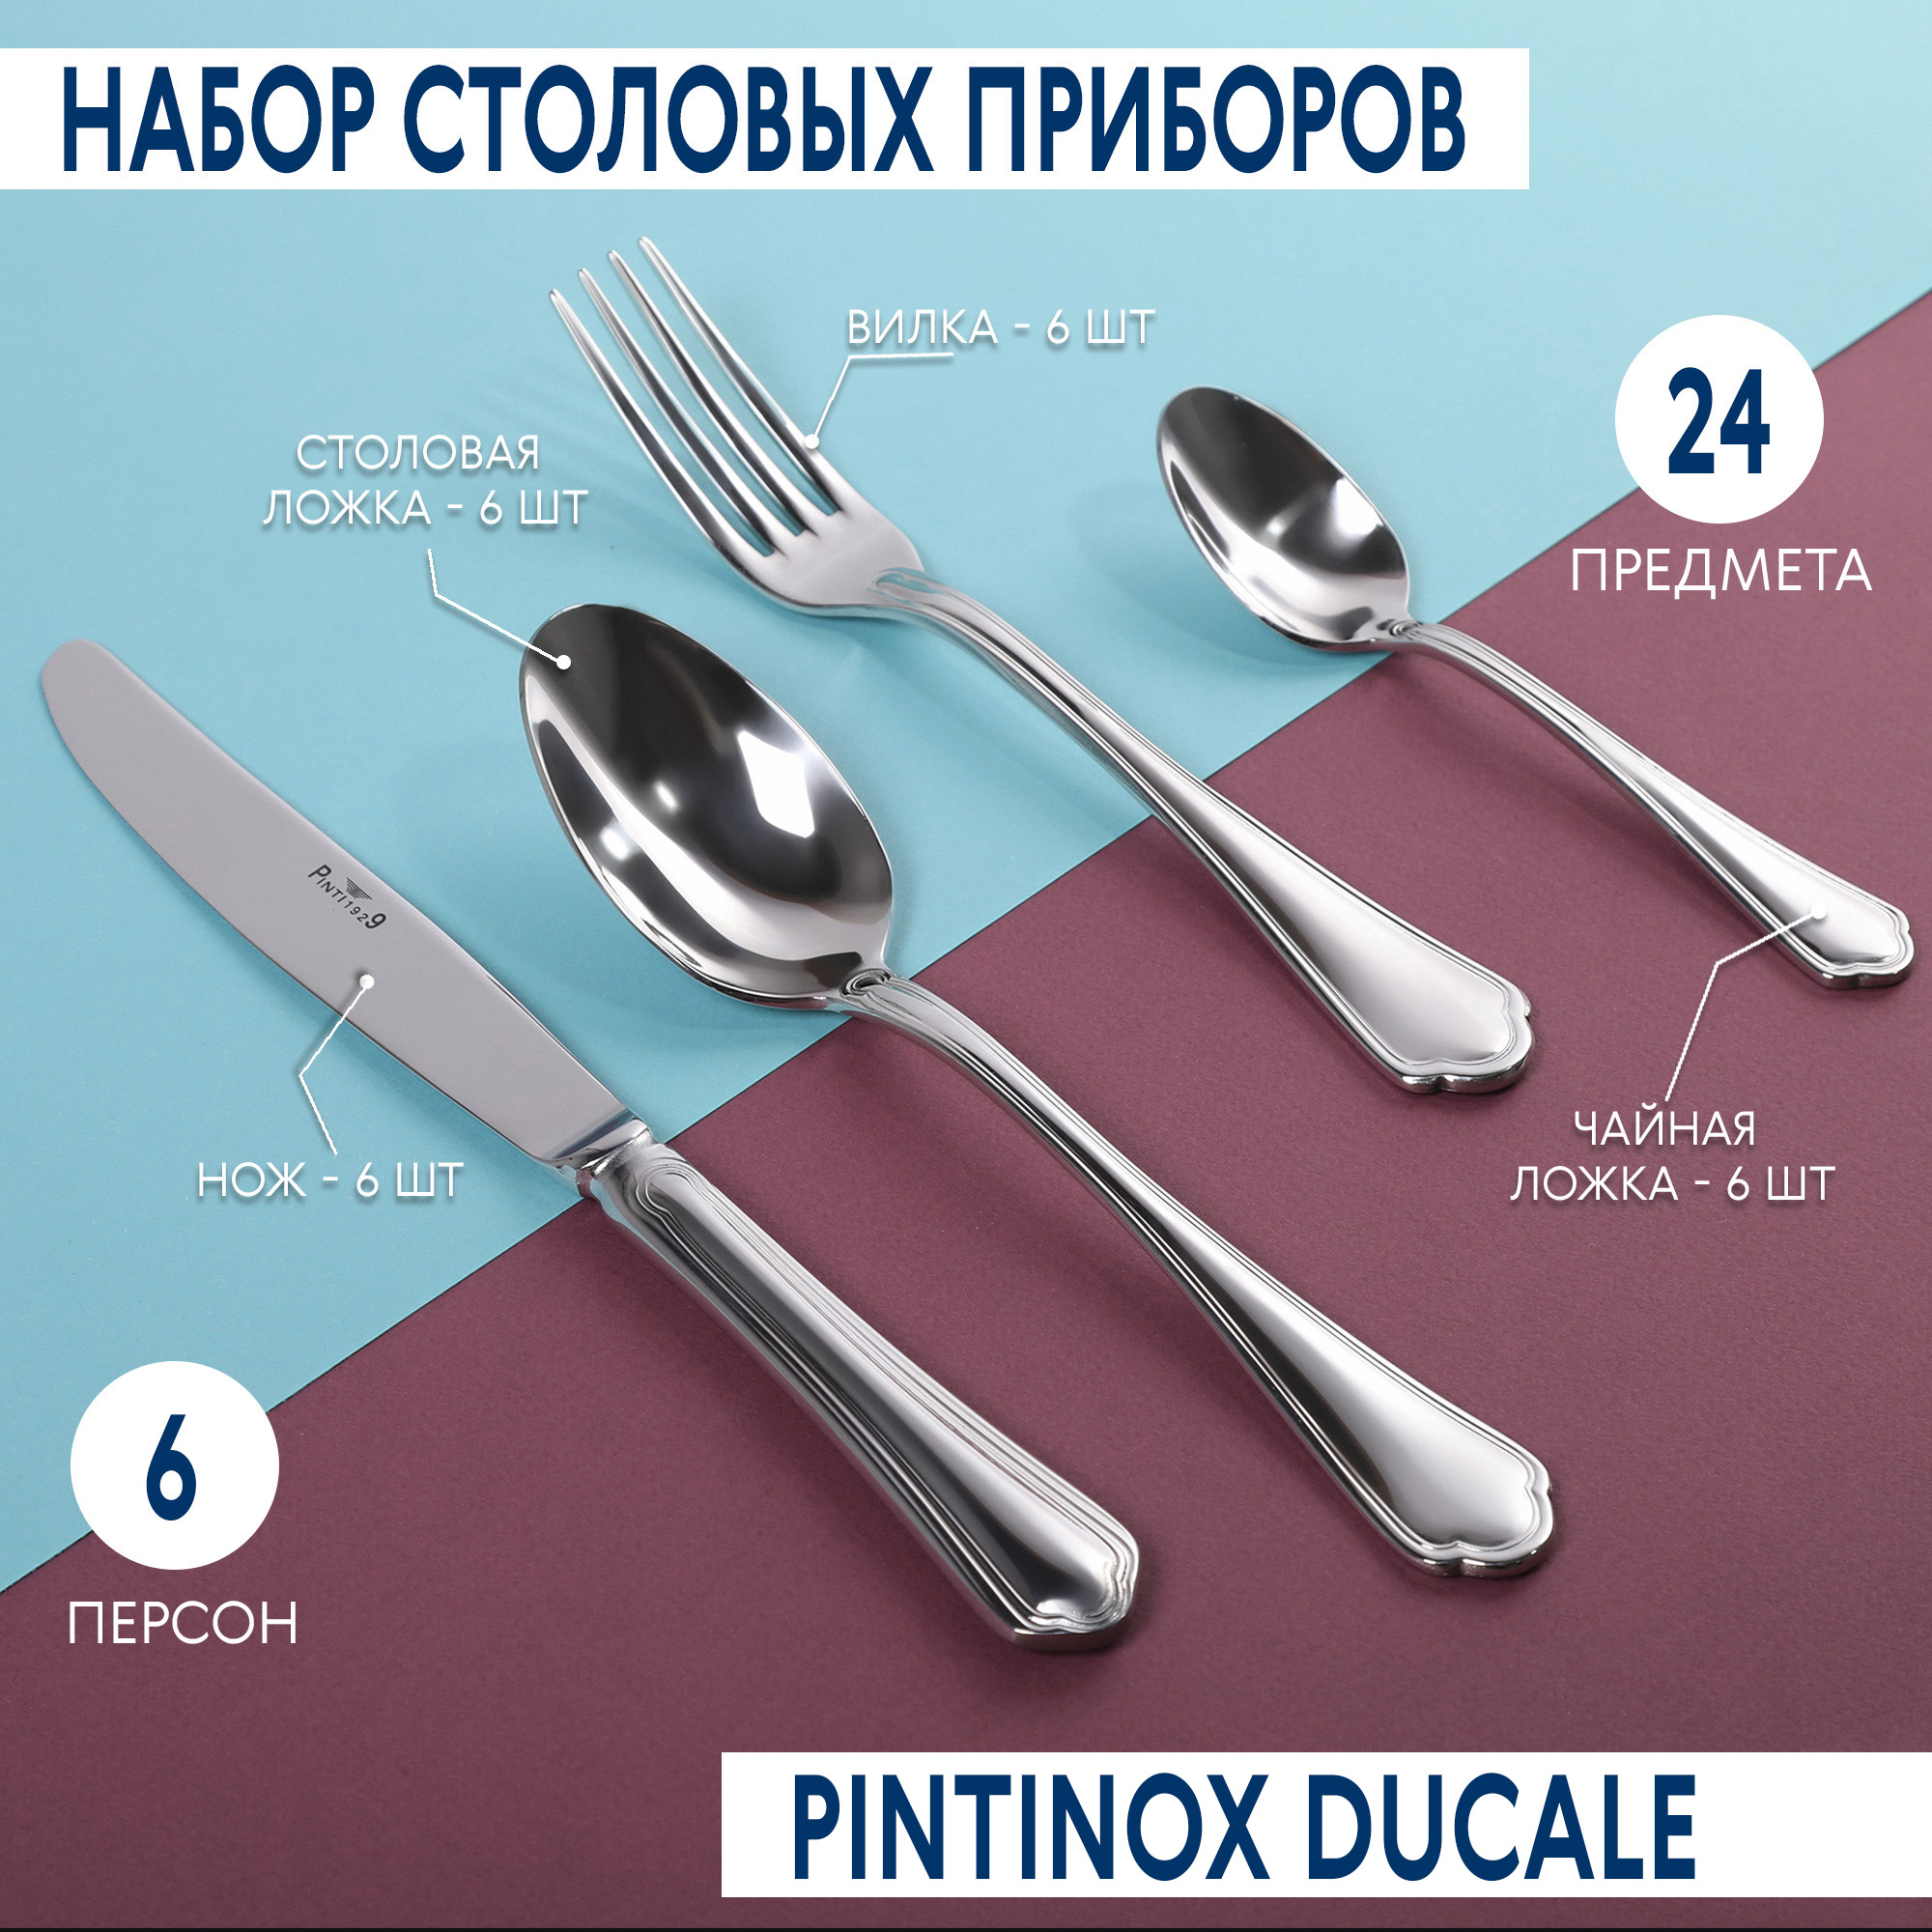 Набор столовых приборов Pintinox Ducale 24 предмета 6 персон, цвет стальной - фото 2